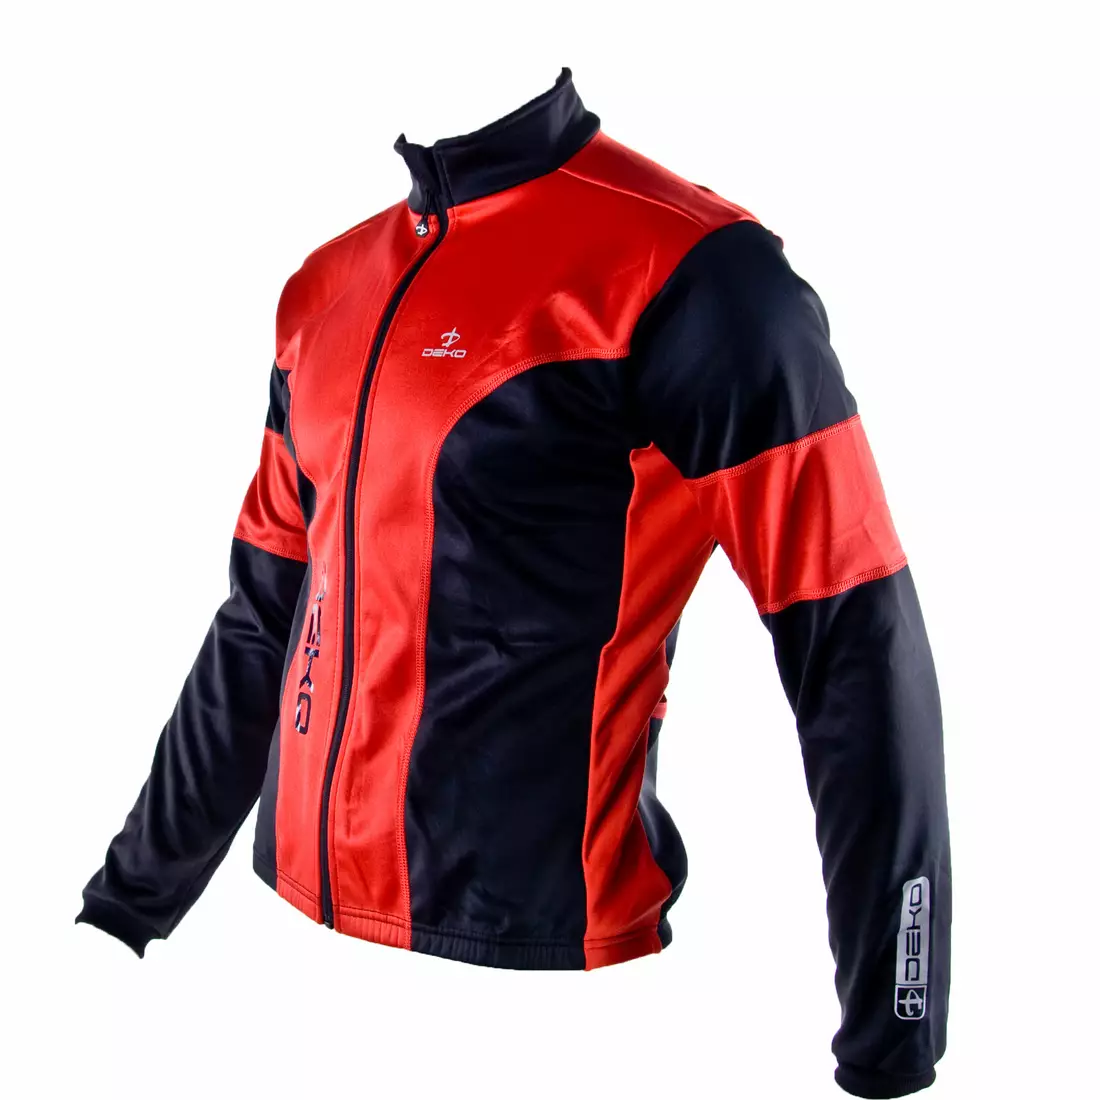 DEKO HUM čierno-červená softshellová cyklistická bunda